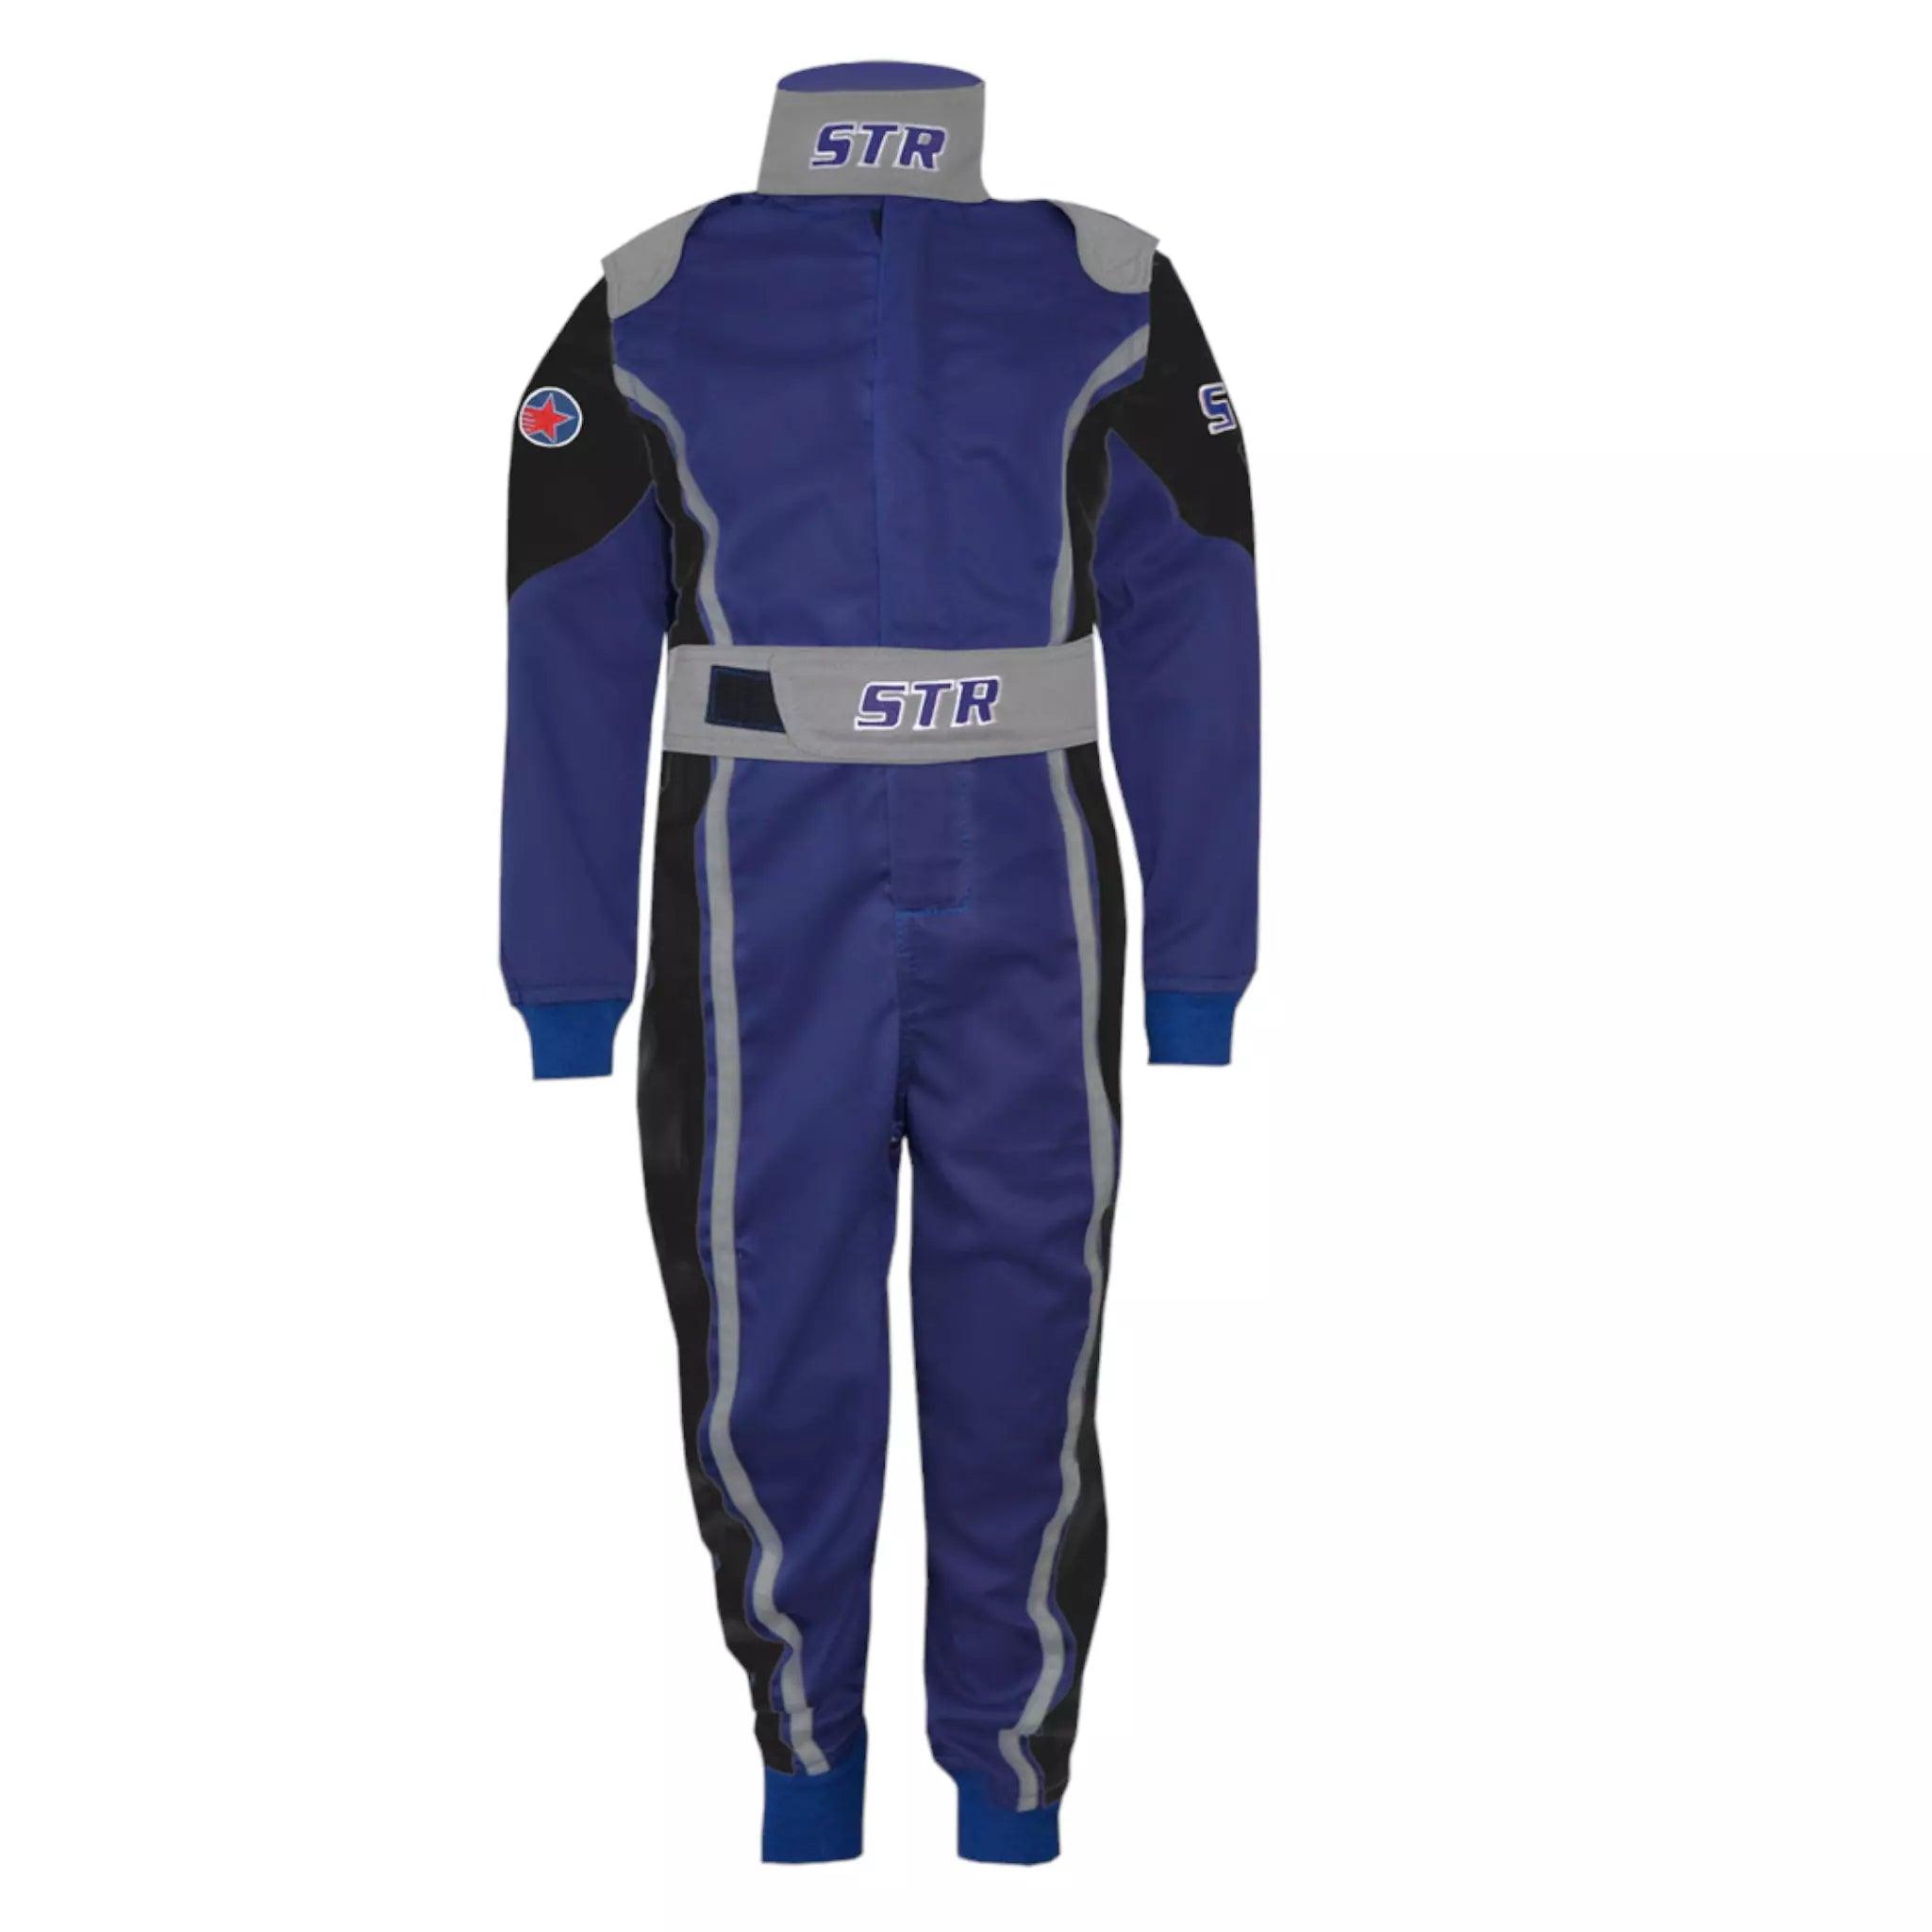 1 Approved Race Suit - Dash Racegear 